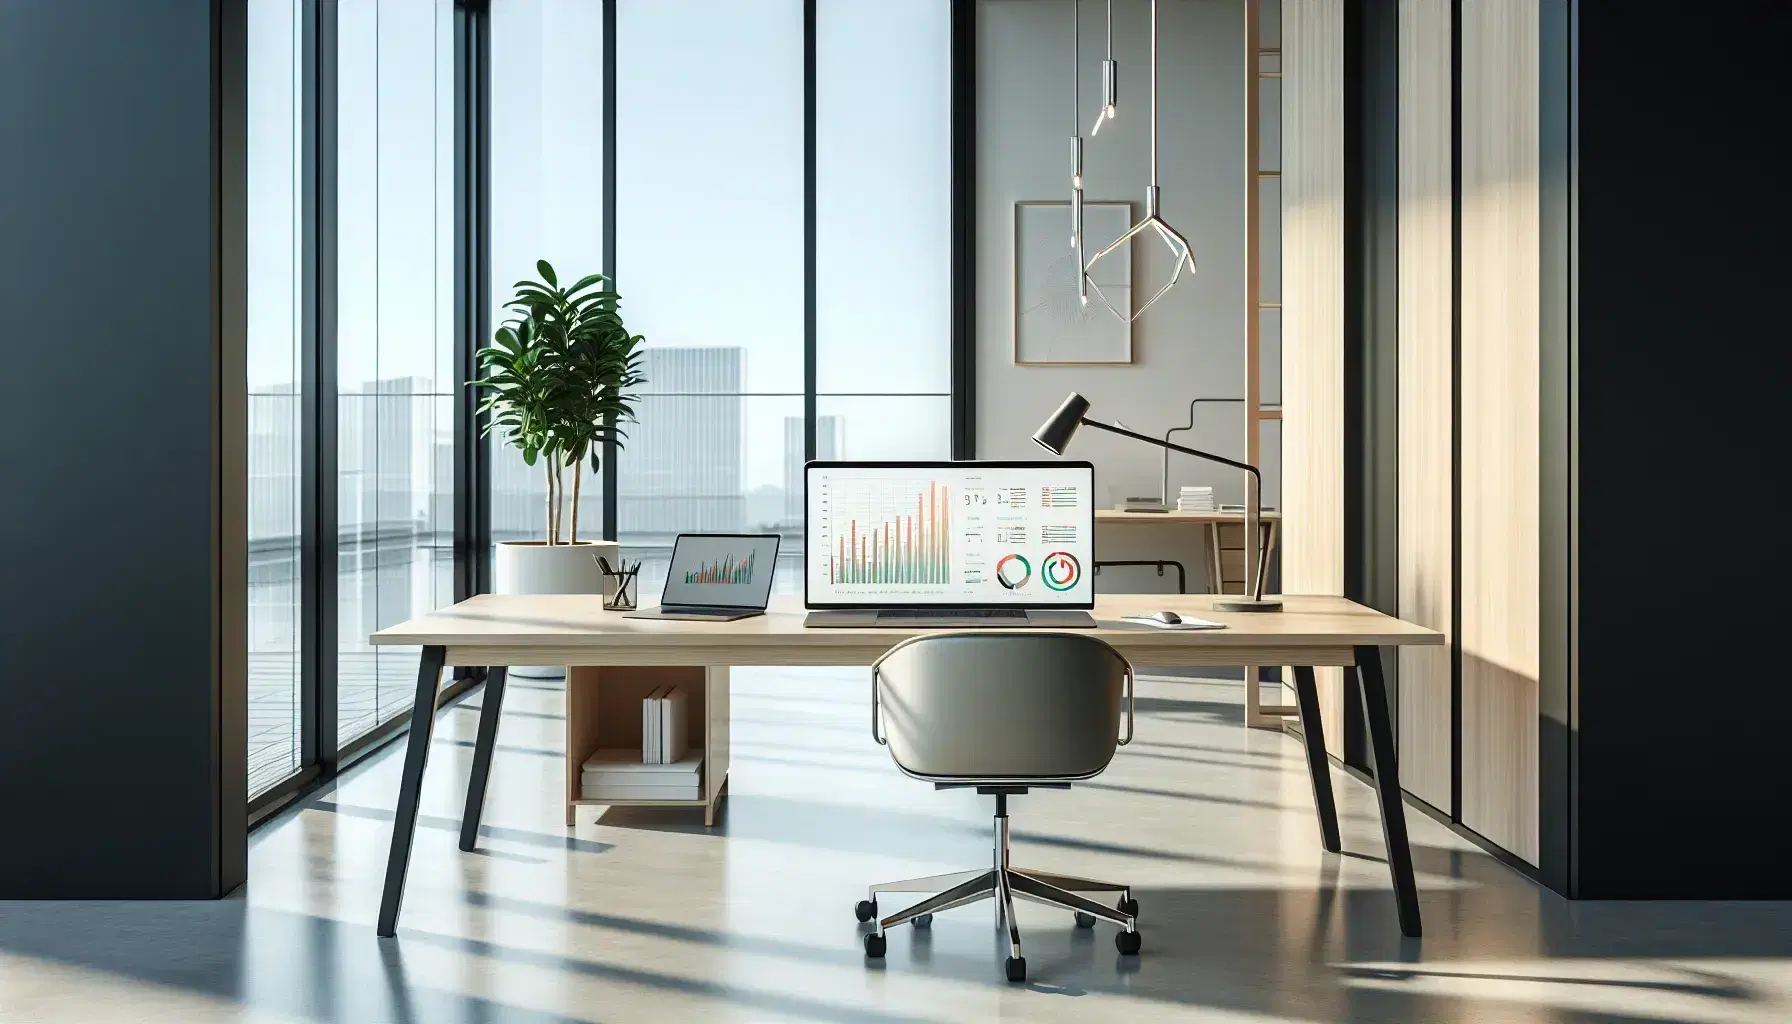 Oficina moderna minimalista con escritorio de madera, portátil mostrando gráficos, silla ergonómica negra y planta interior, bajo luz natural de ventana grande.